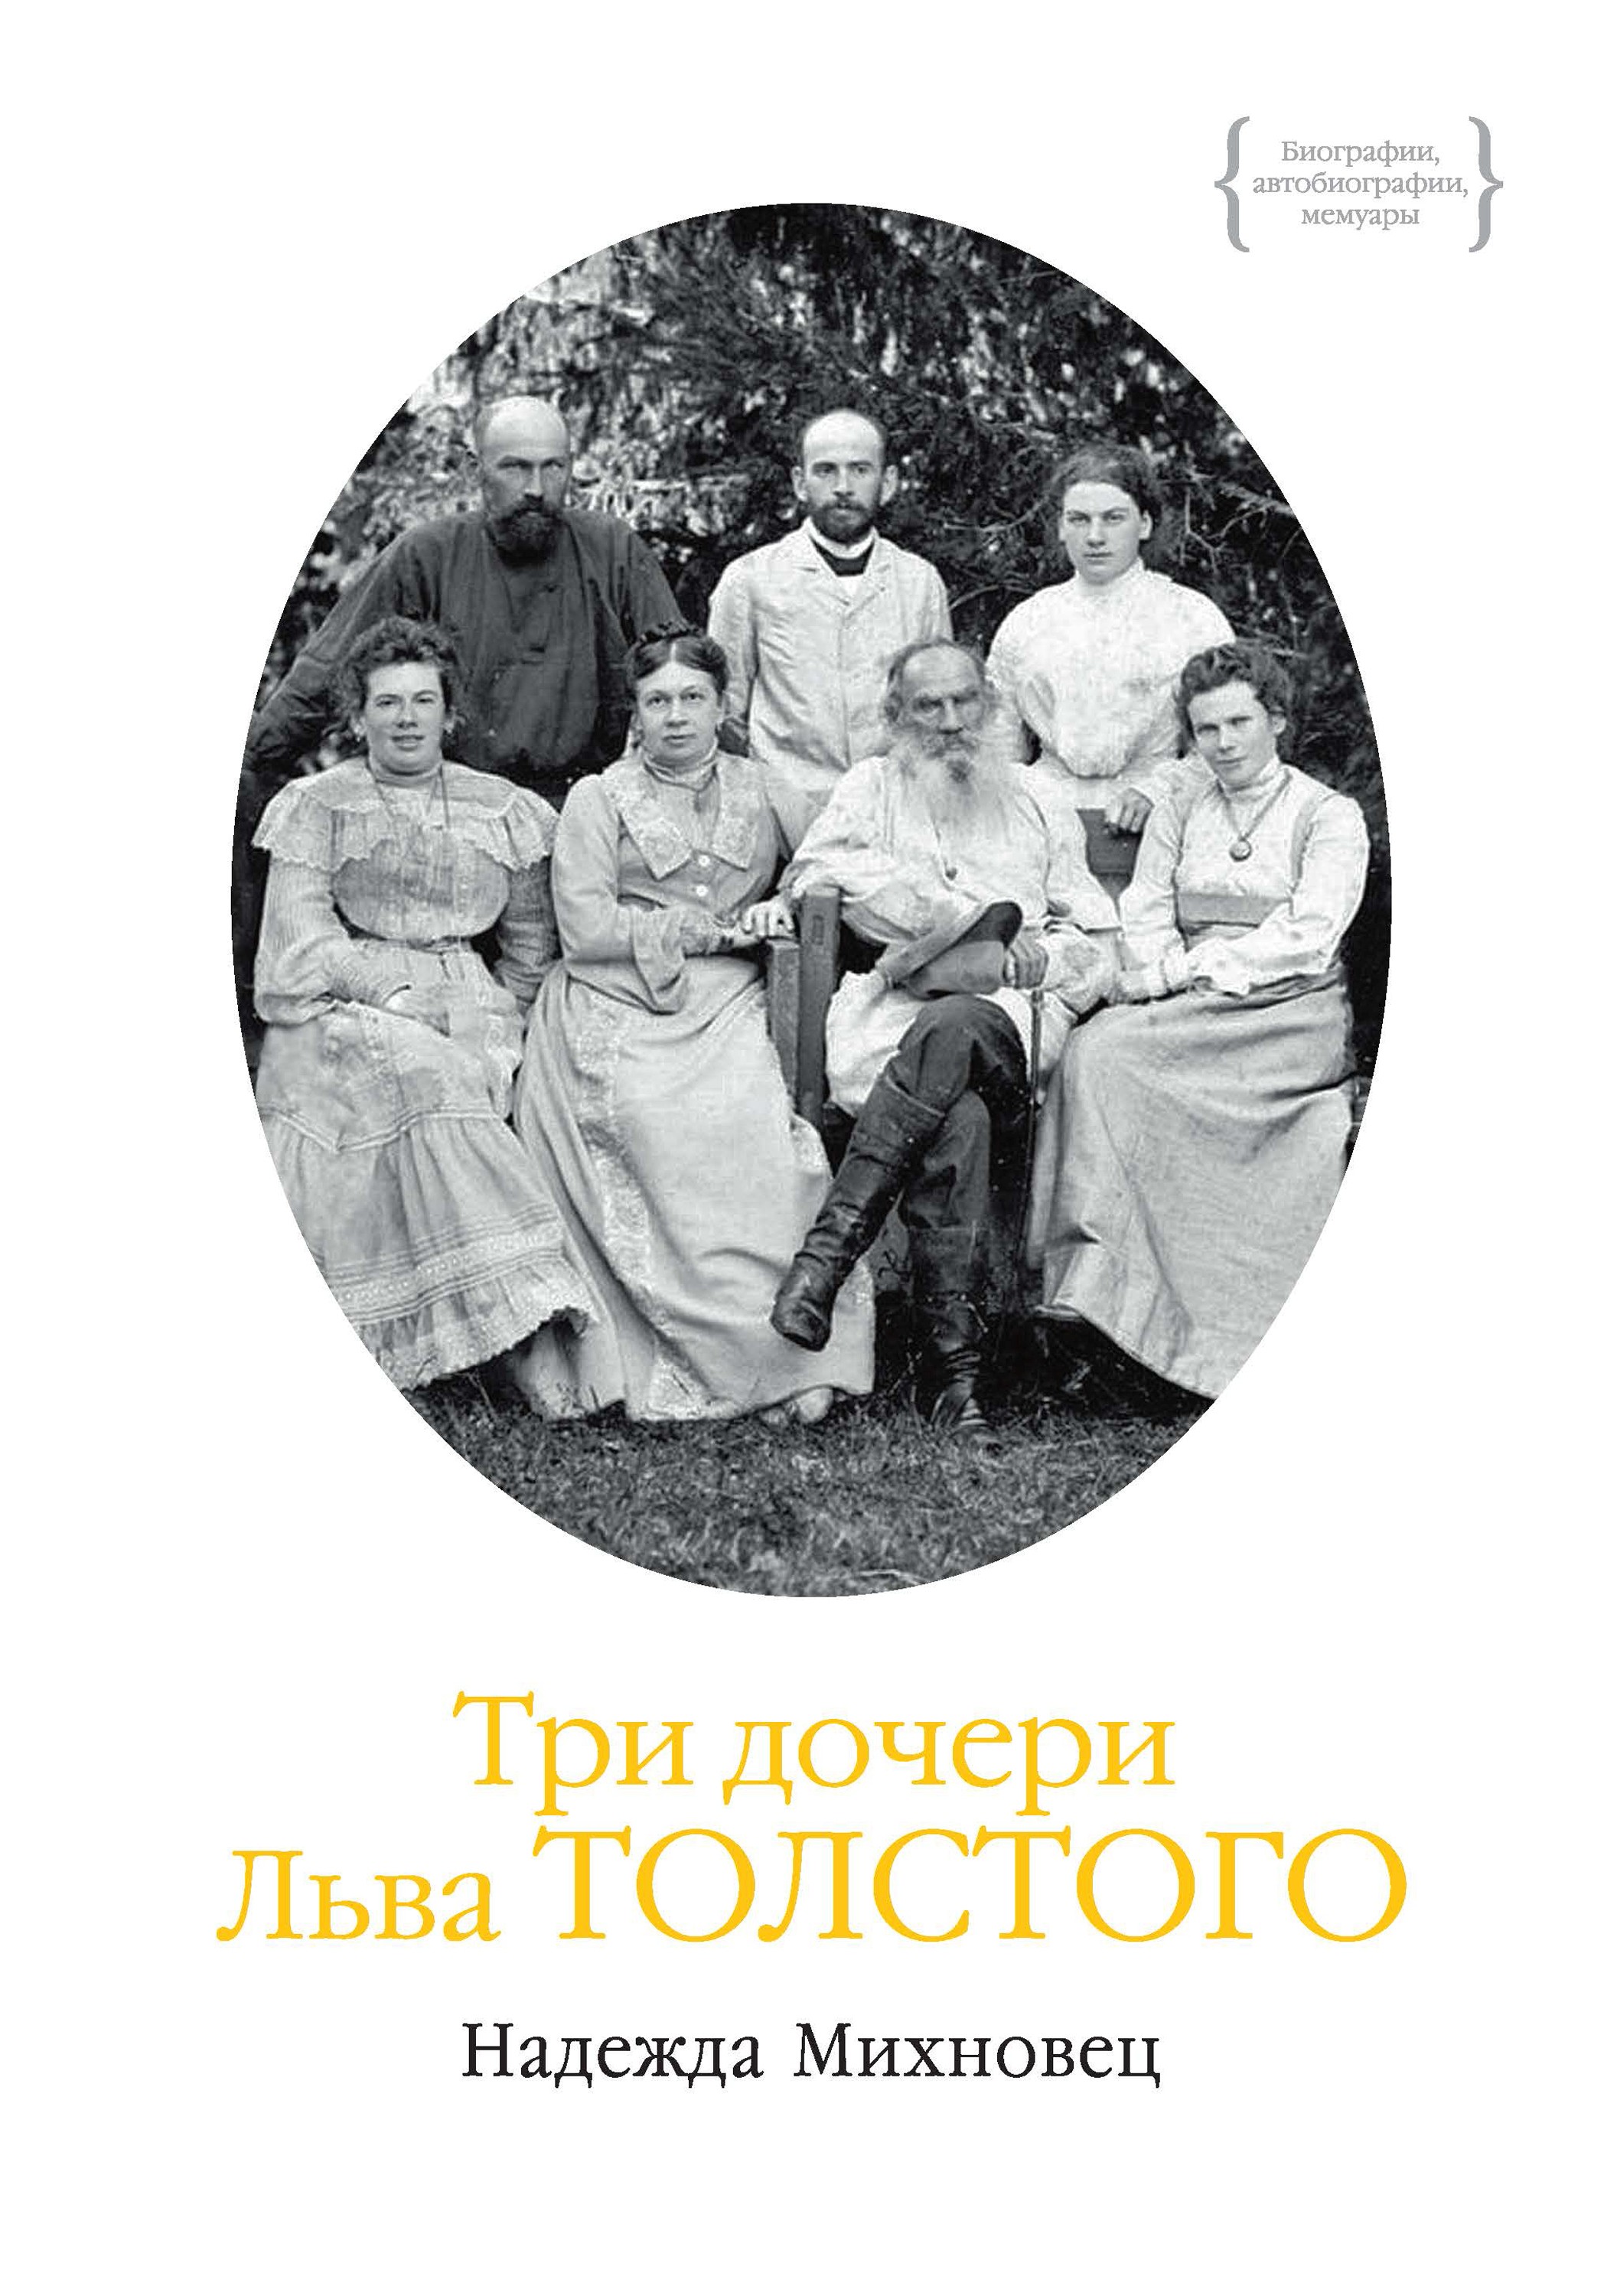 Книга Три дочери Льва Толстого из серии , созданная Надежда Михновец, может относится к жанру Биографии и Мемуары. Стоимость электронной книги Три дочери Льва Толстого с идентификатором 46576597 составляет 244.30 руб.